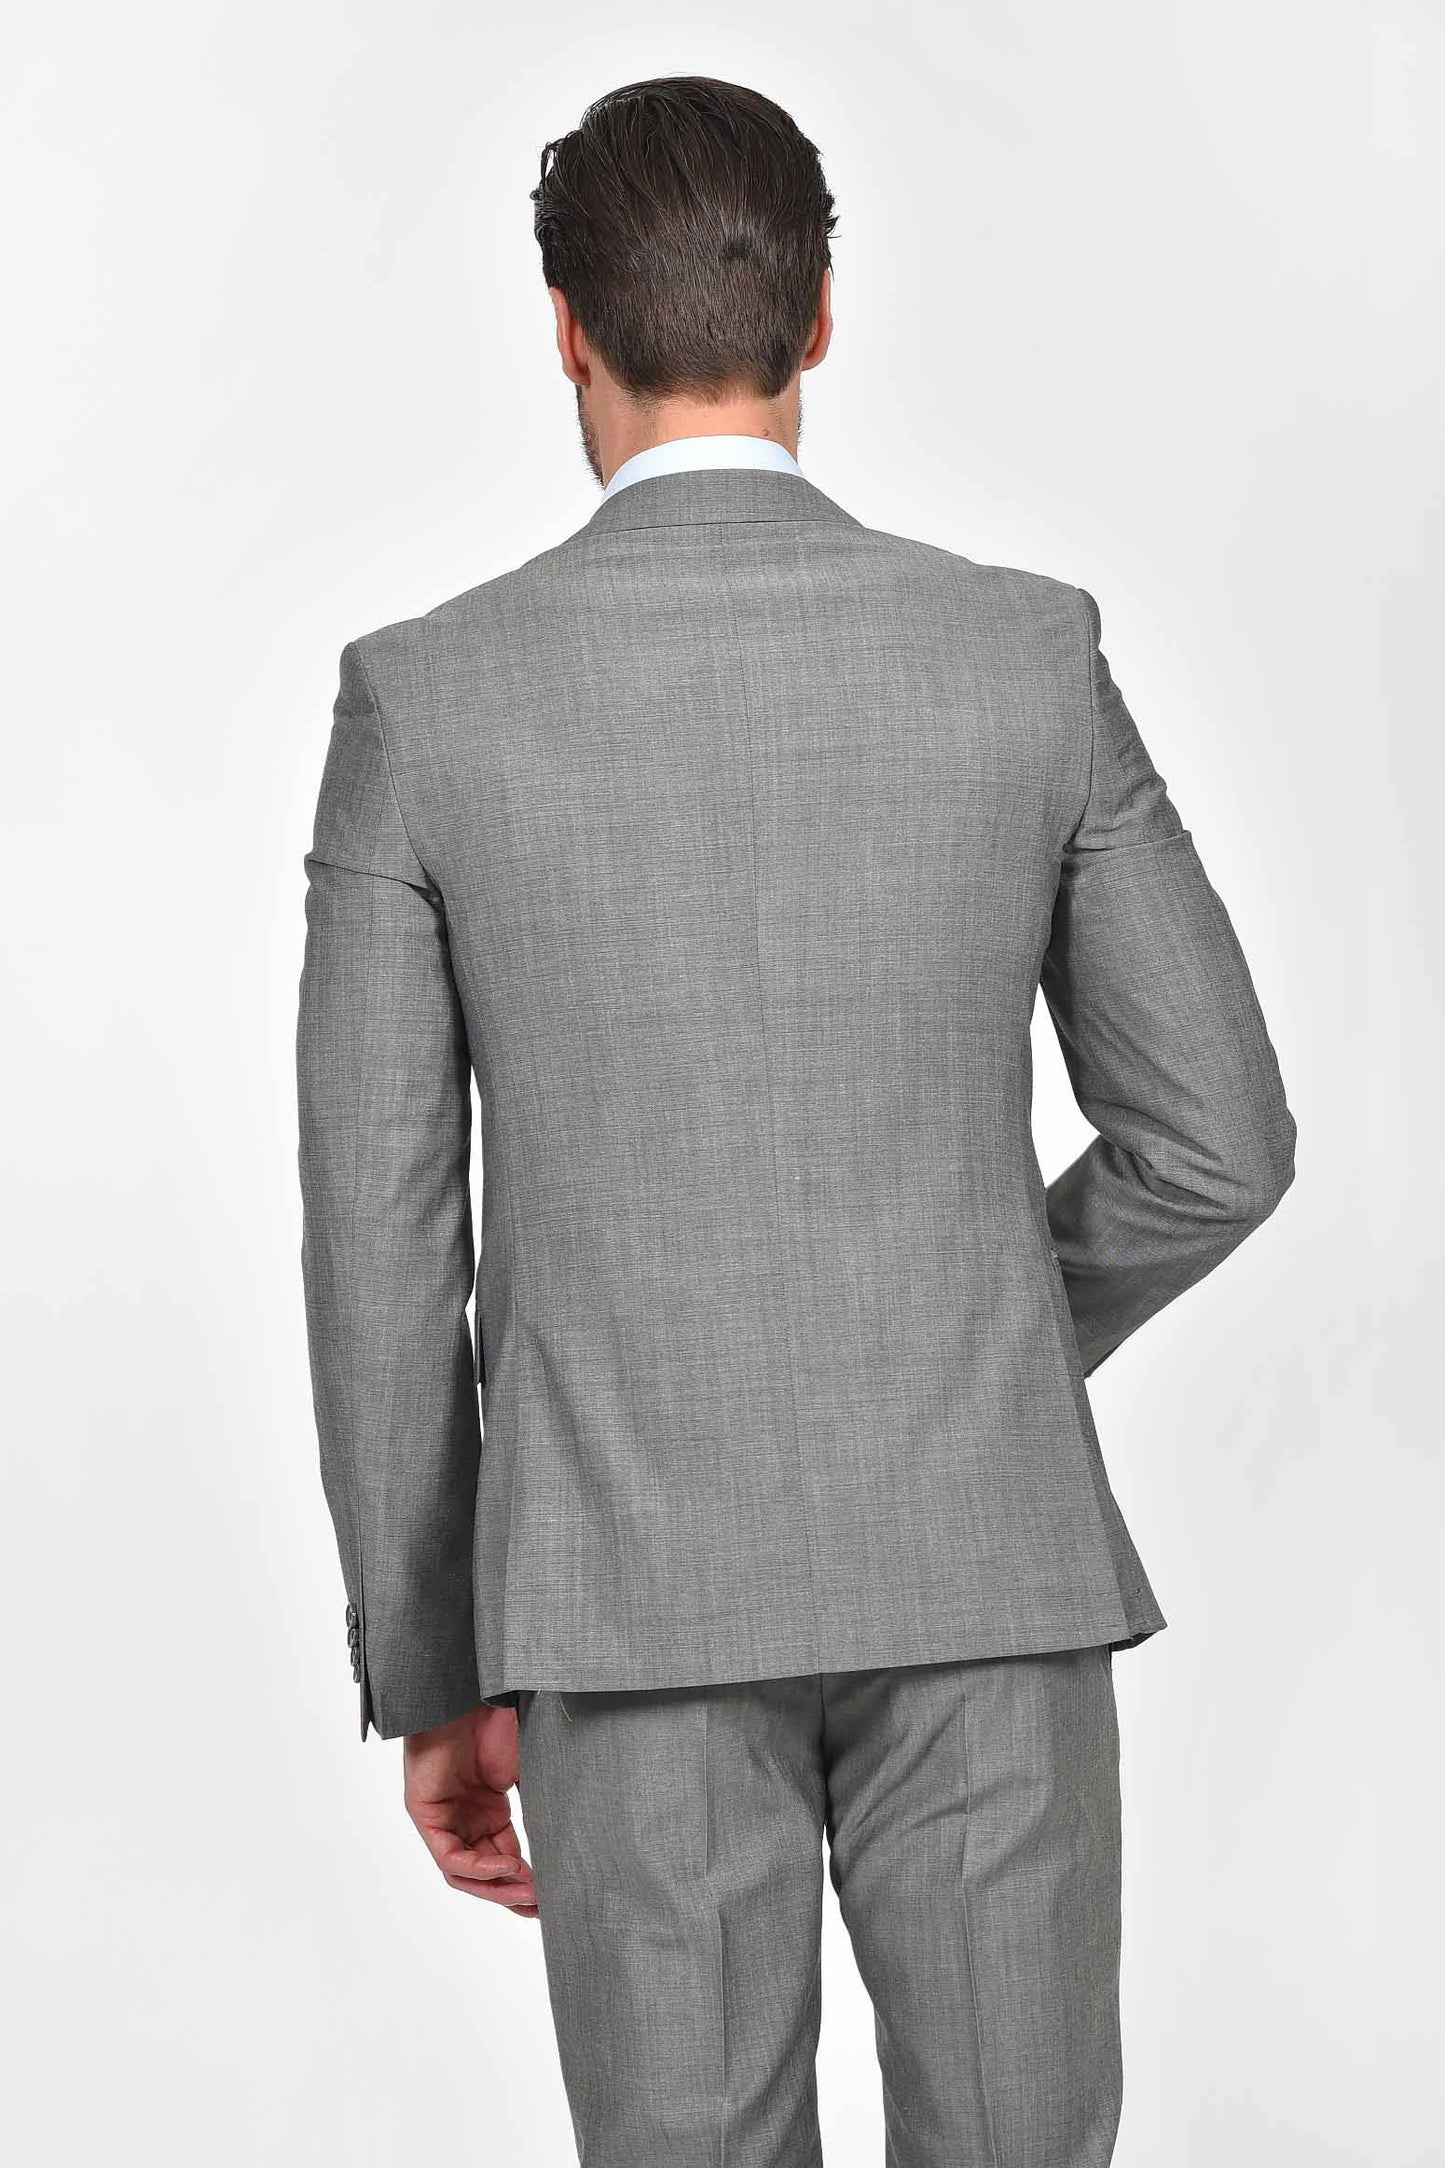 ανδρικό-κοστούμι-με-ύφασμα-100%-cool-wool